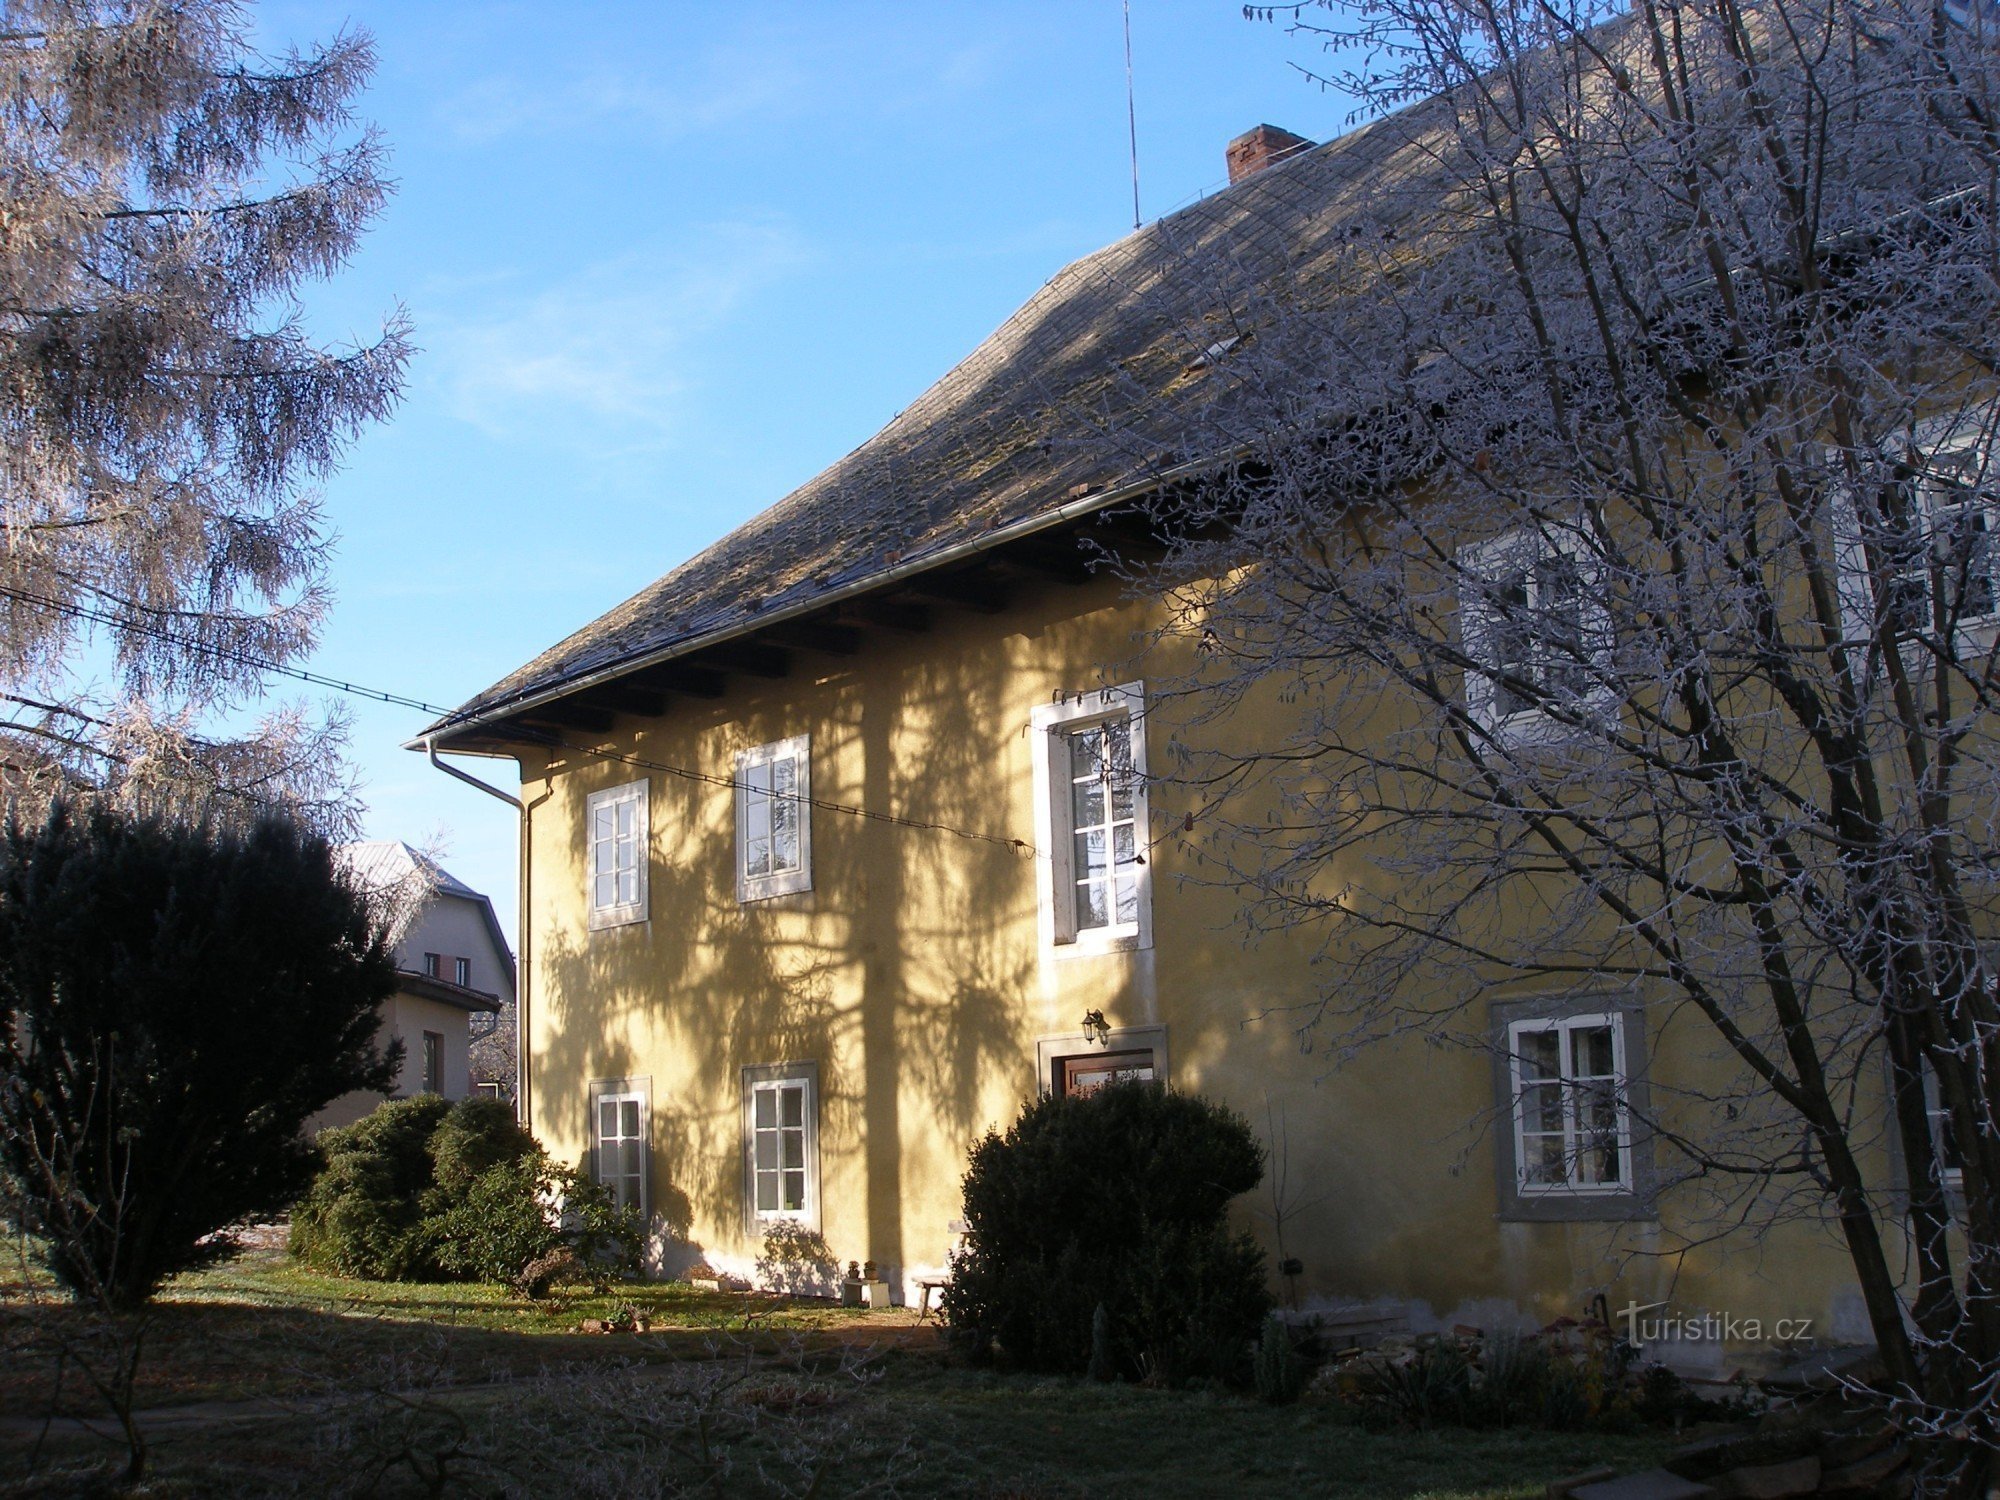 Nhà phân tích cũ ở làng Sudslava được xây dựng vào năm 1692